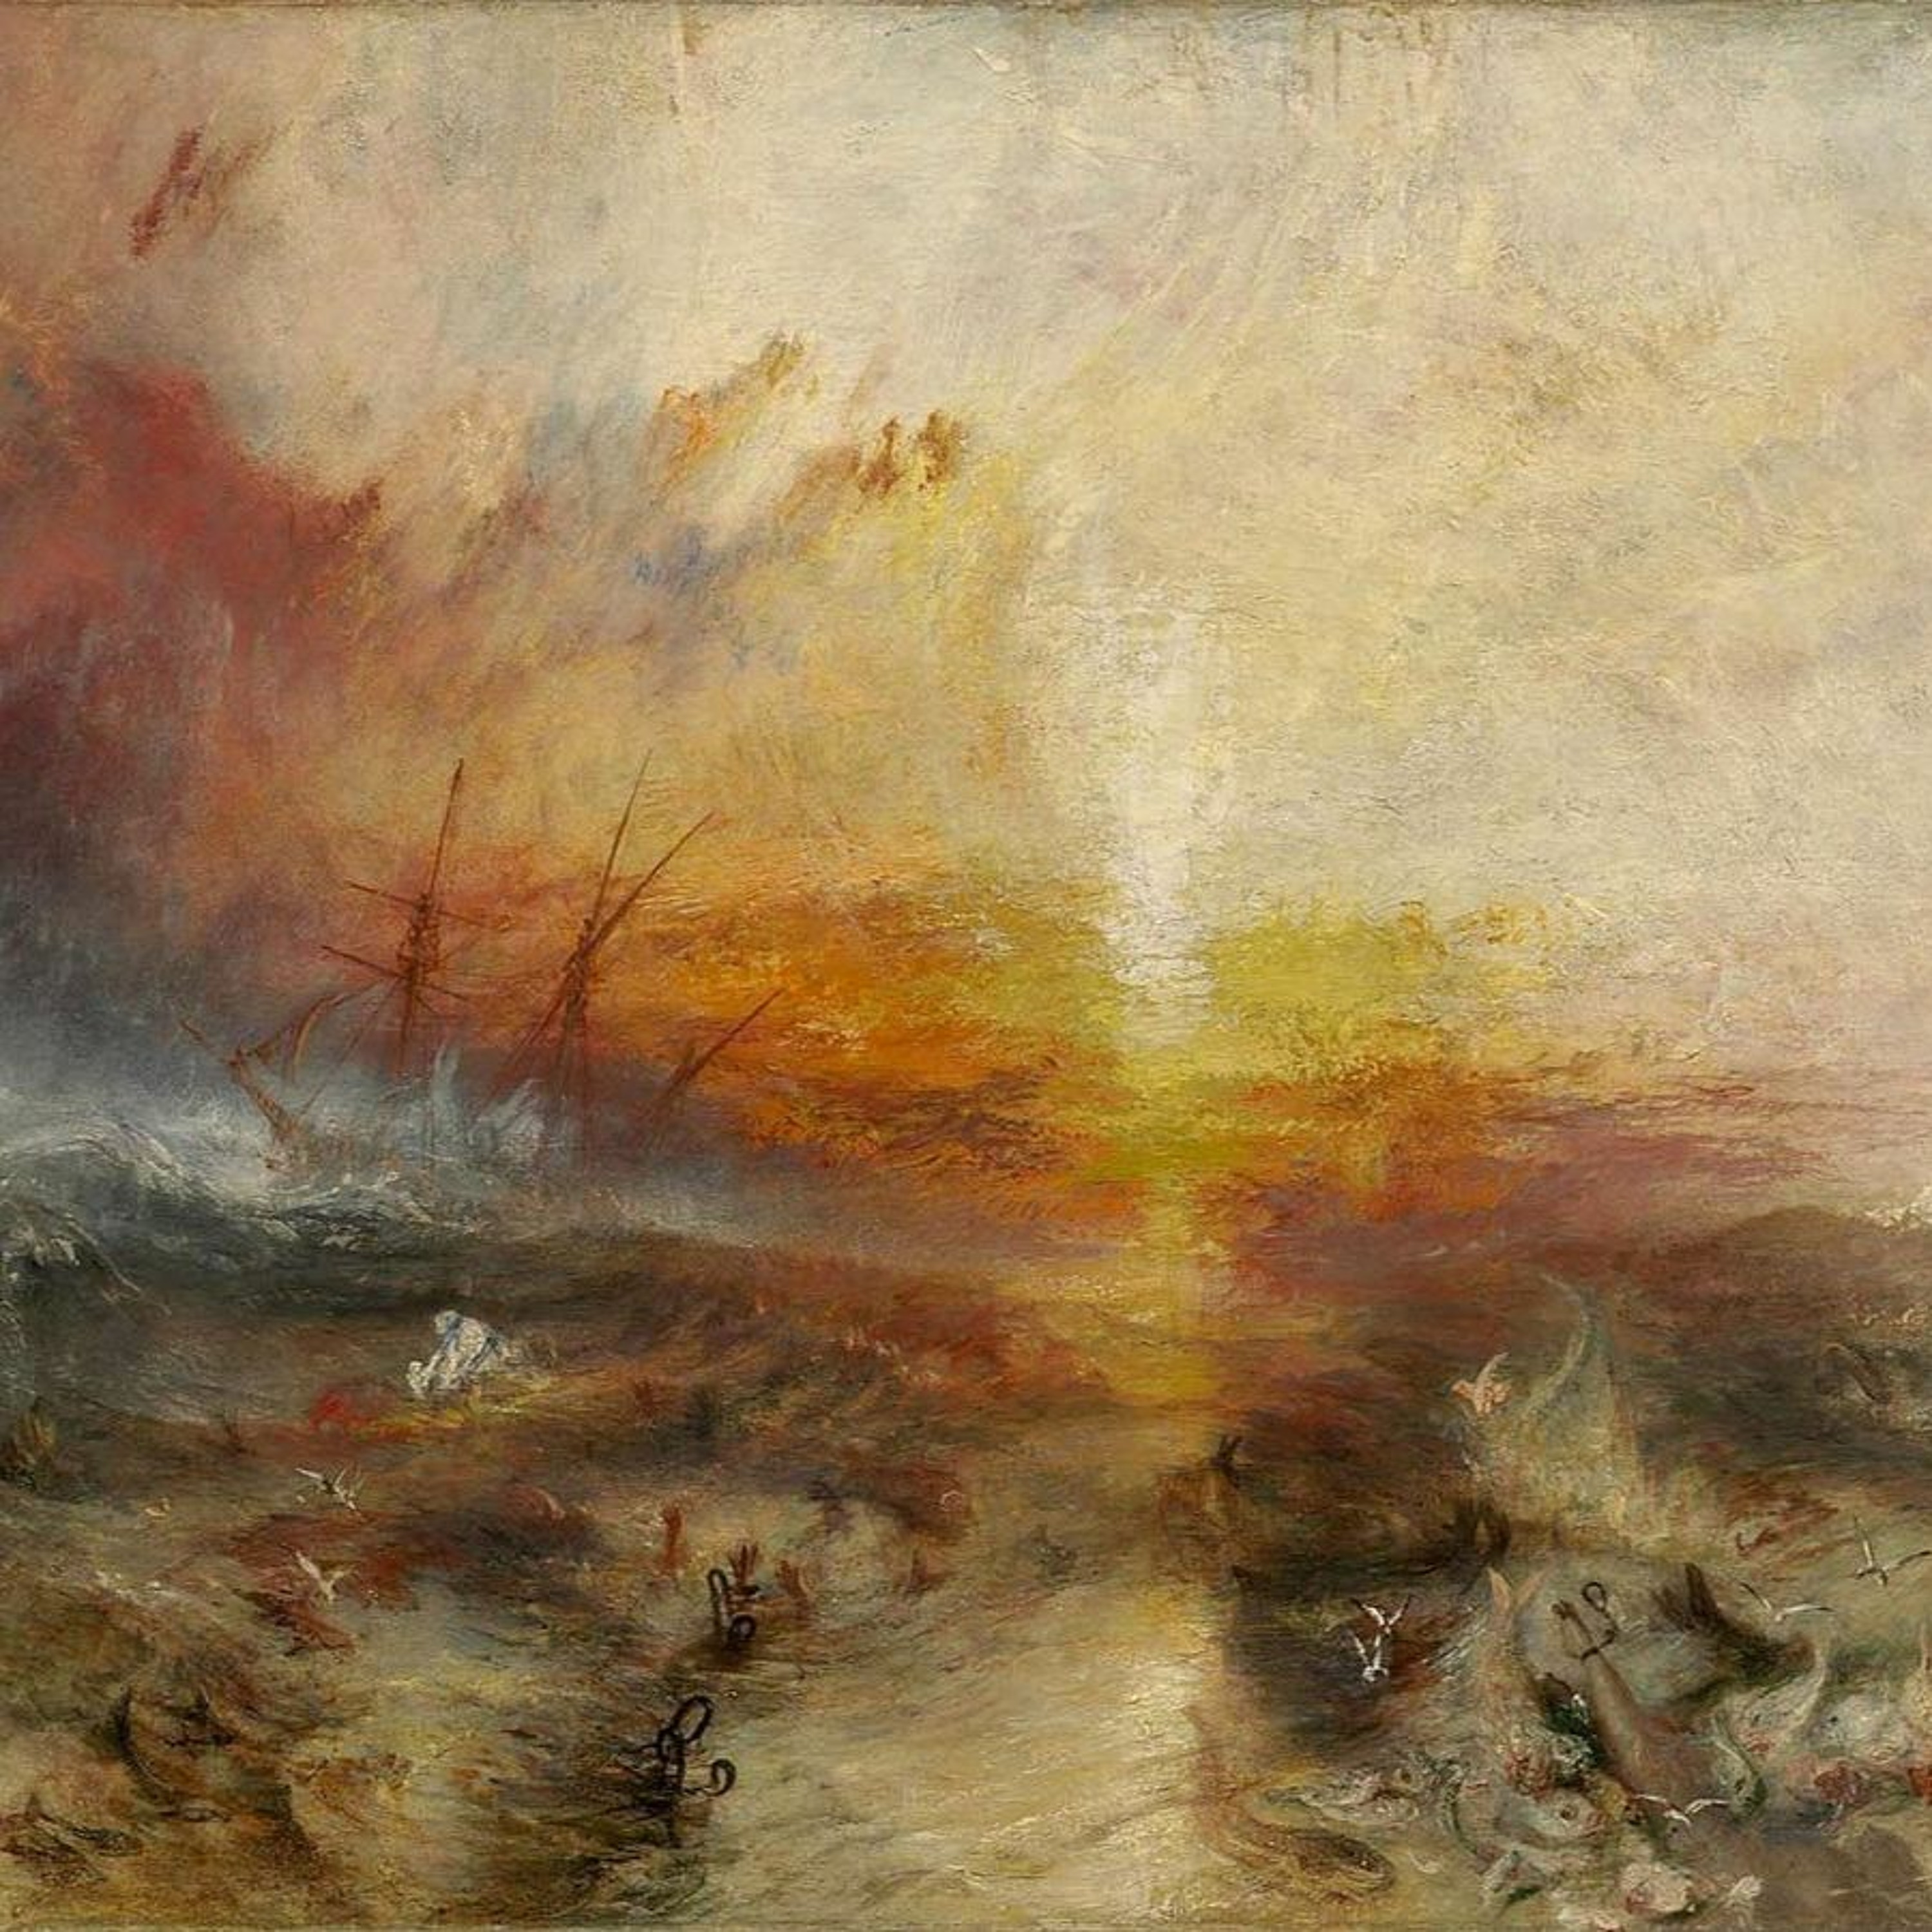 Ep. 18 - JMW Turner's "The Slave Ship" (1840)